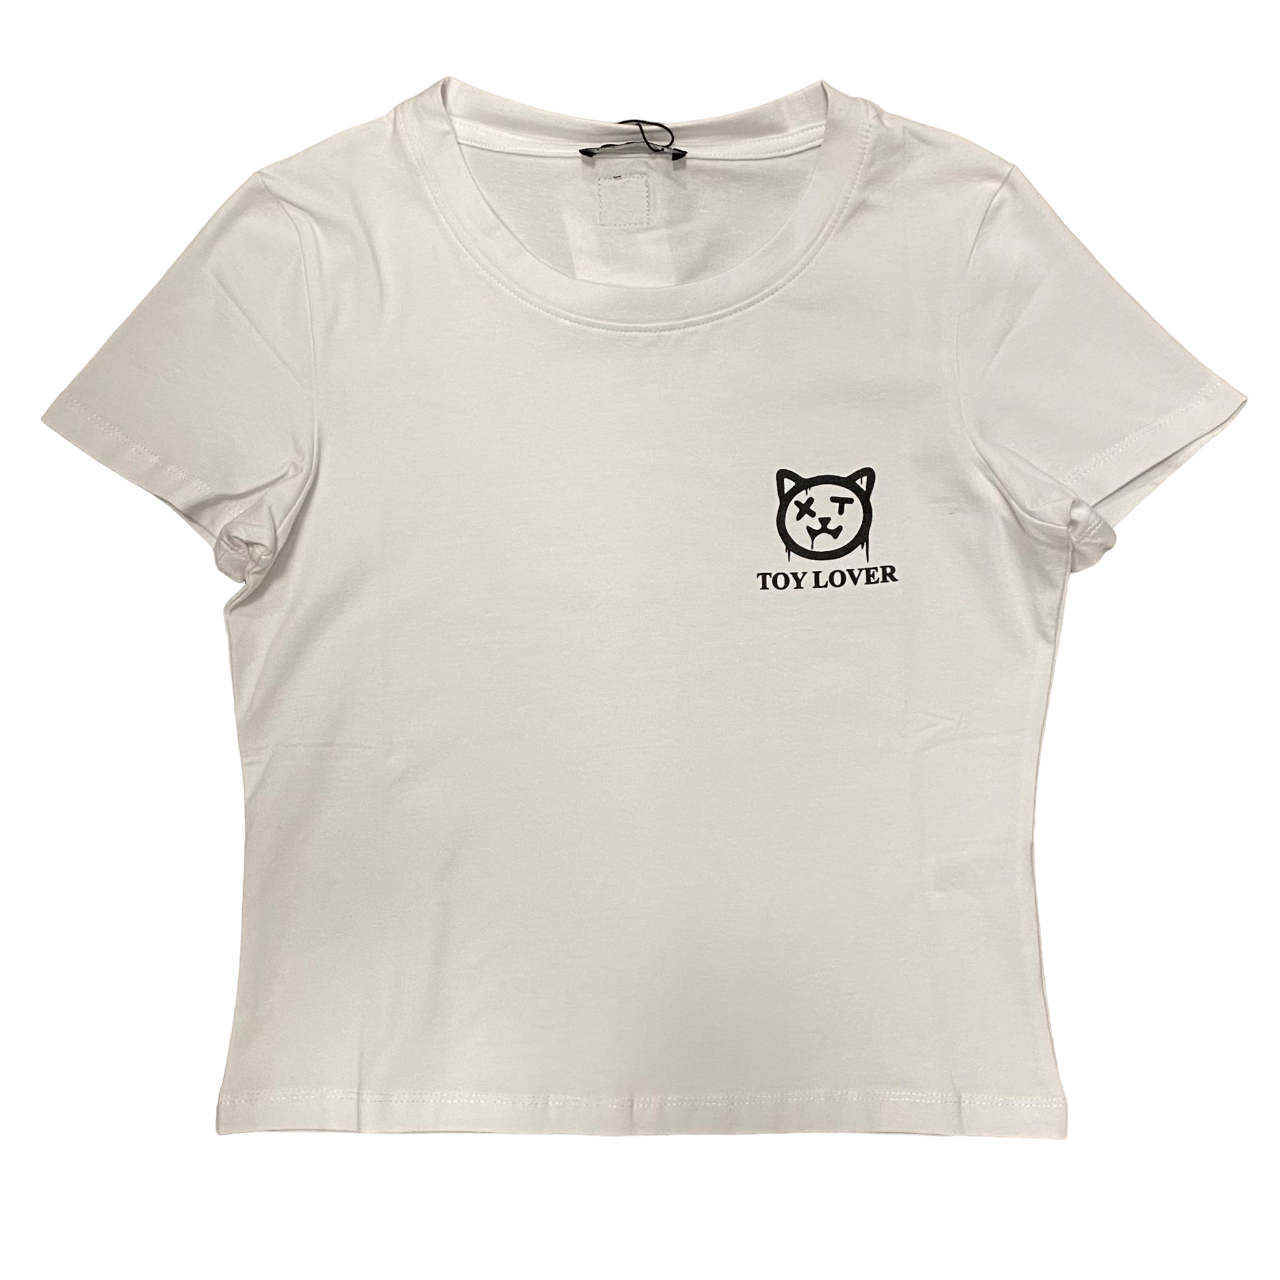 XT Studio maglietta corta con grafica Toy Lover da donna. Colore bianco